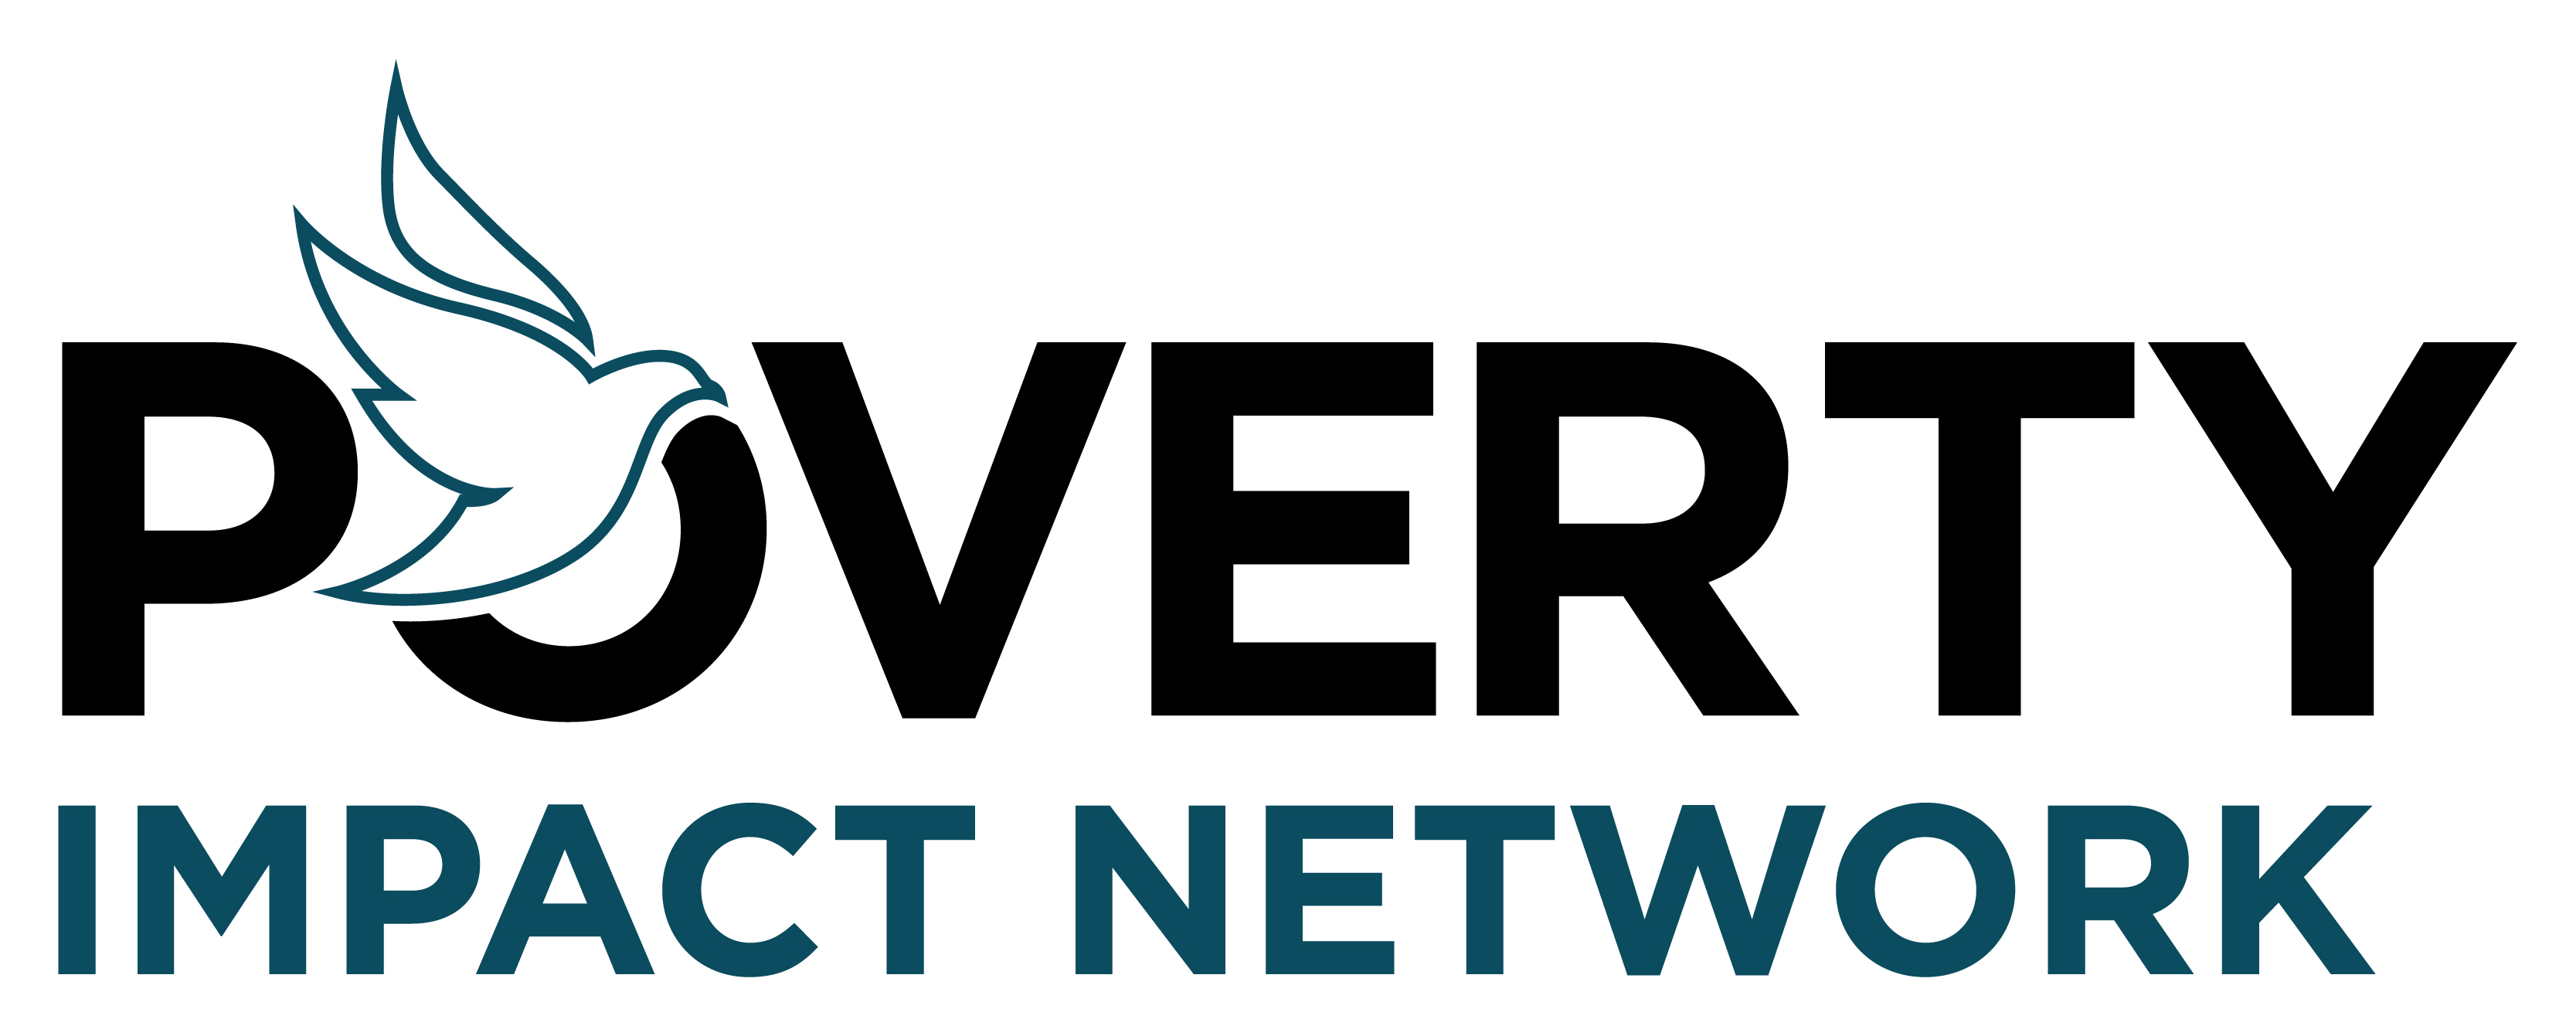 Poverty Impact Network